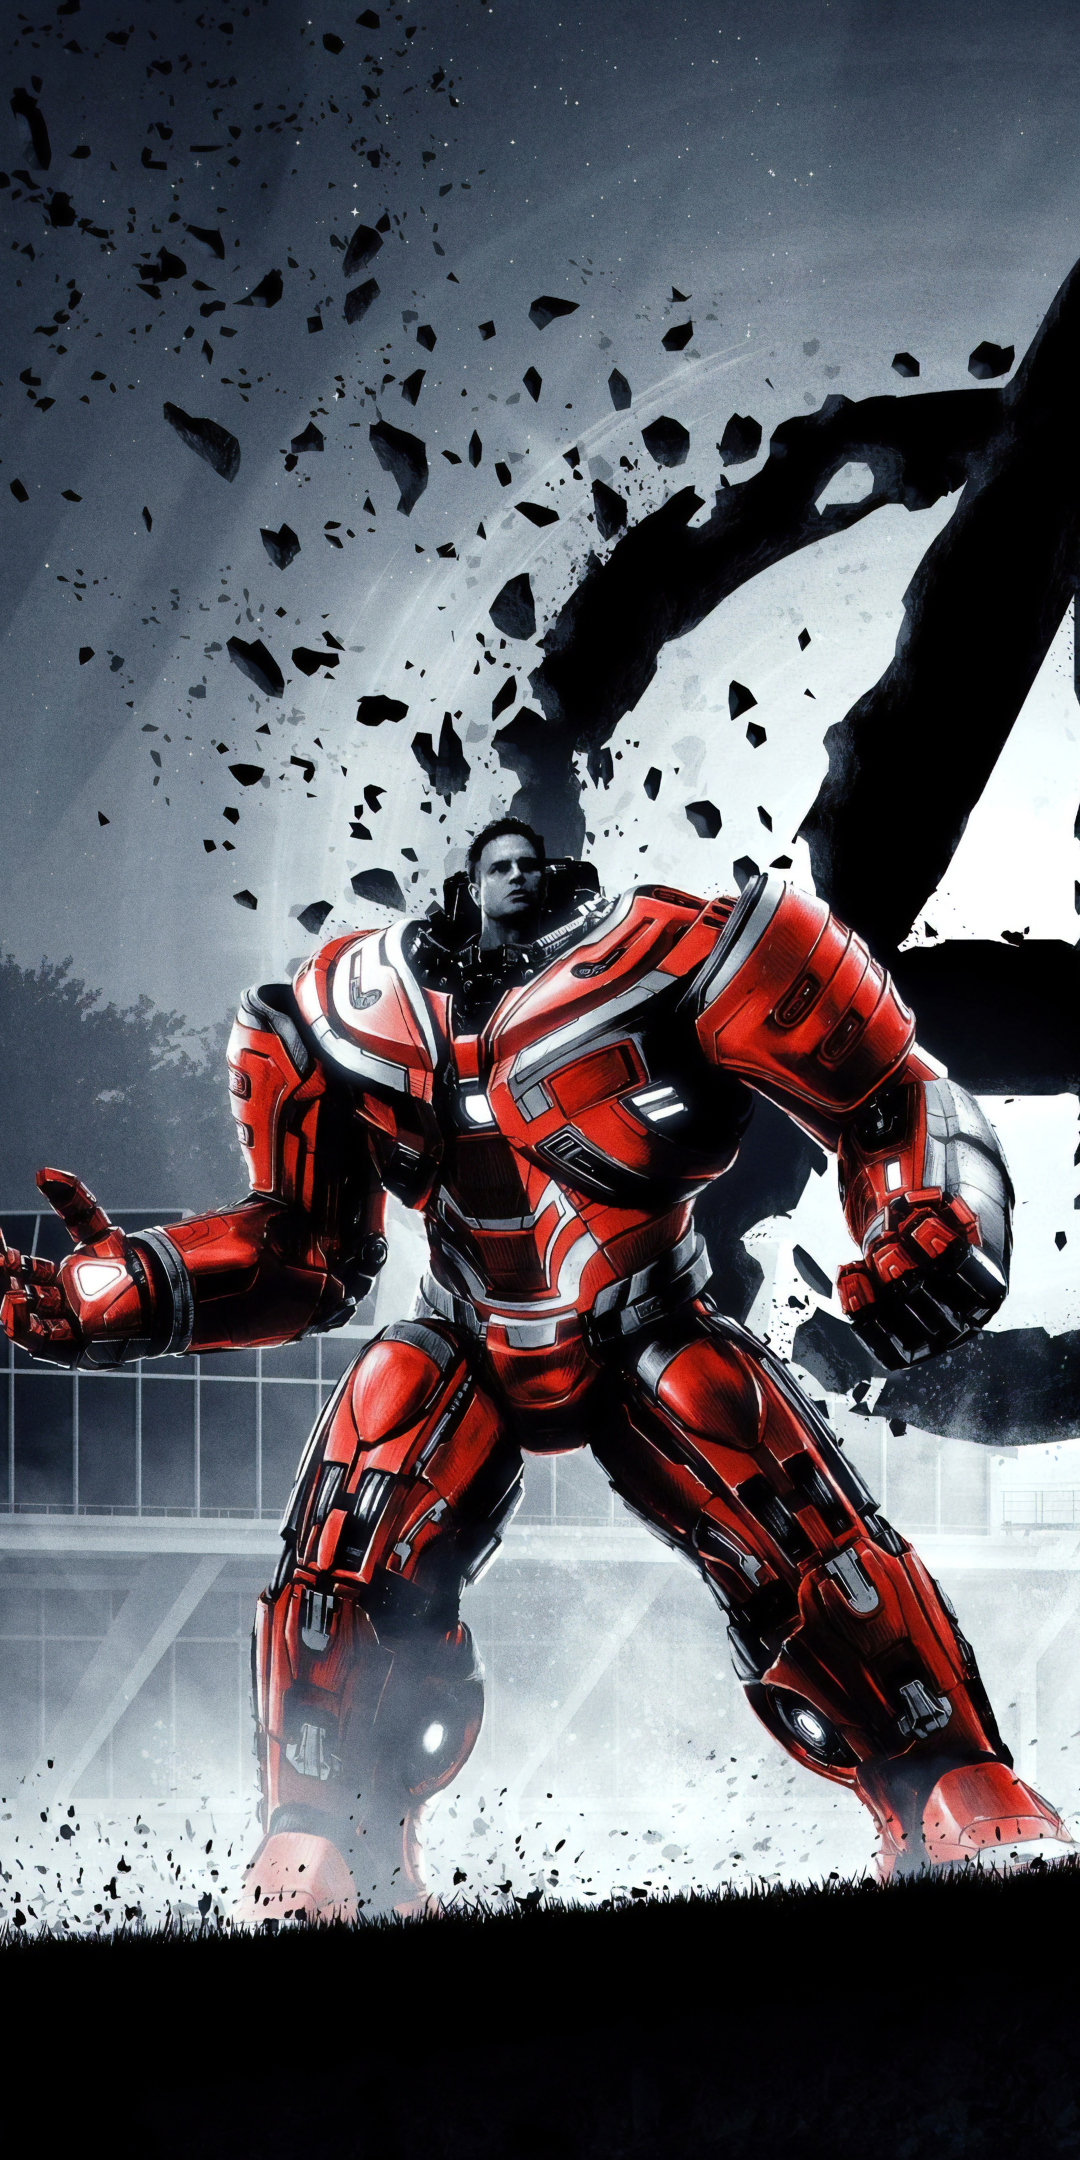 Descarga gratuita de fondo de pantalla para móvil de Los Vengadores, Películas, Marca Ruffalo, Hulkbuster, Vengadores: Endgame, Vengadores.